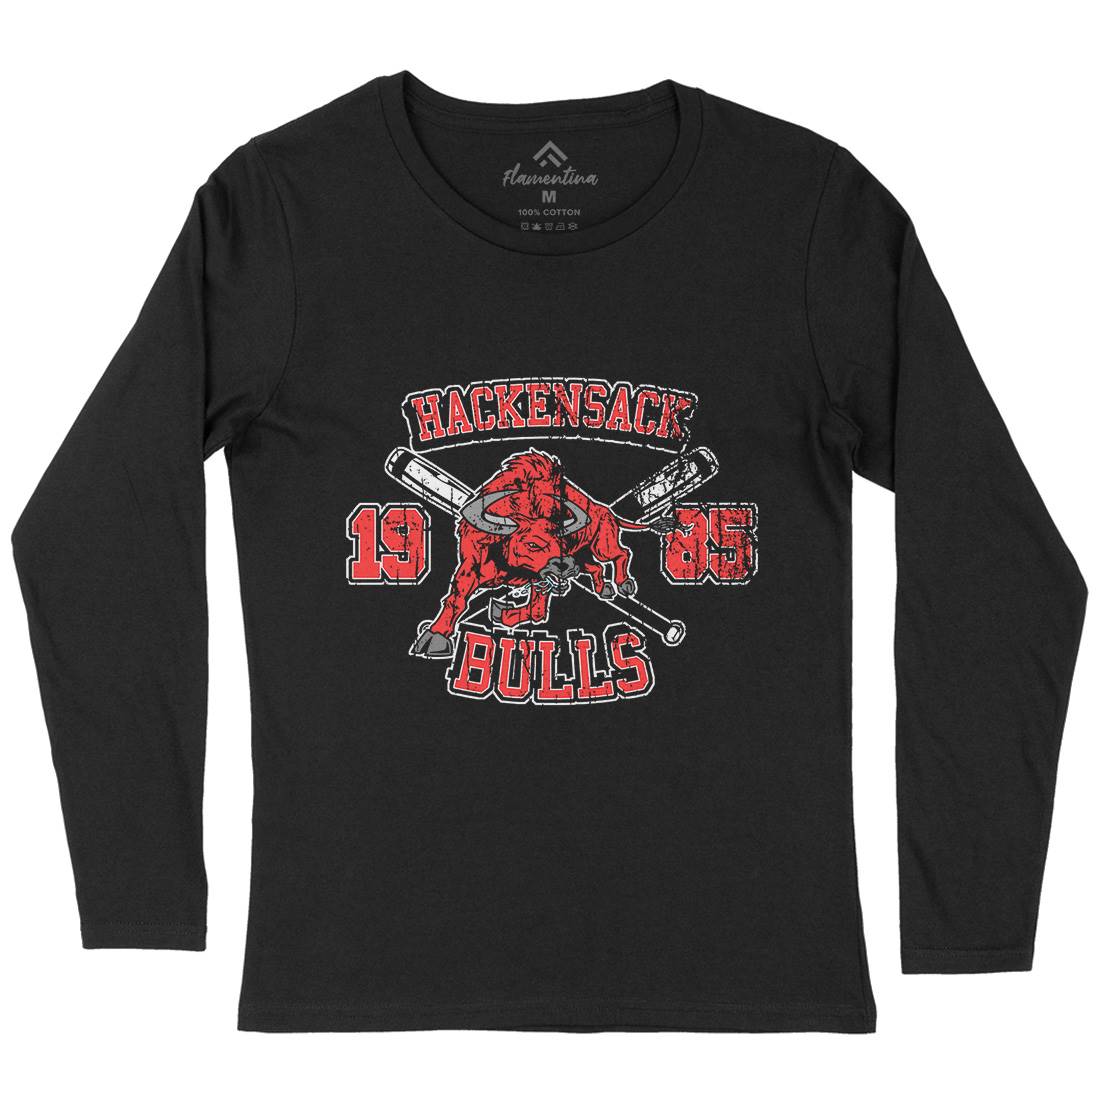 Hackensack Bulls Womens Long Sleeve T-Shirt Sport D121